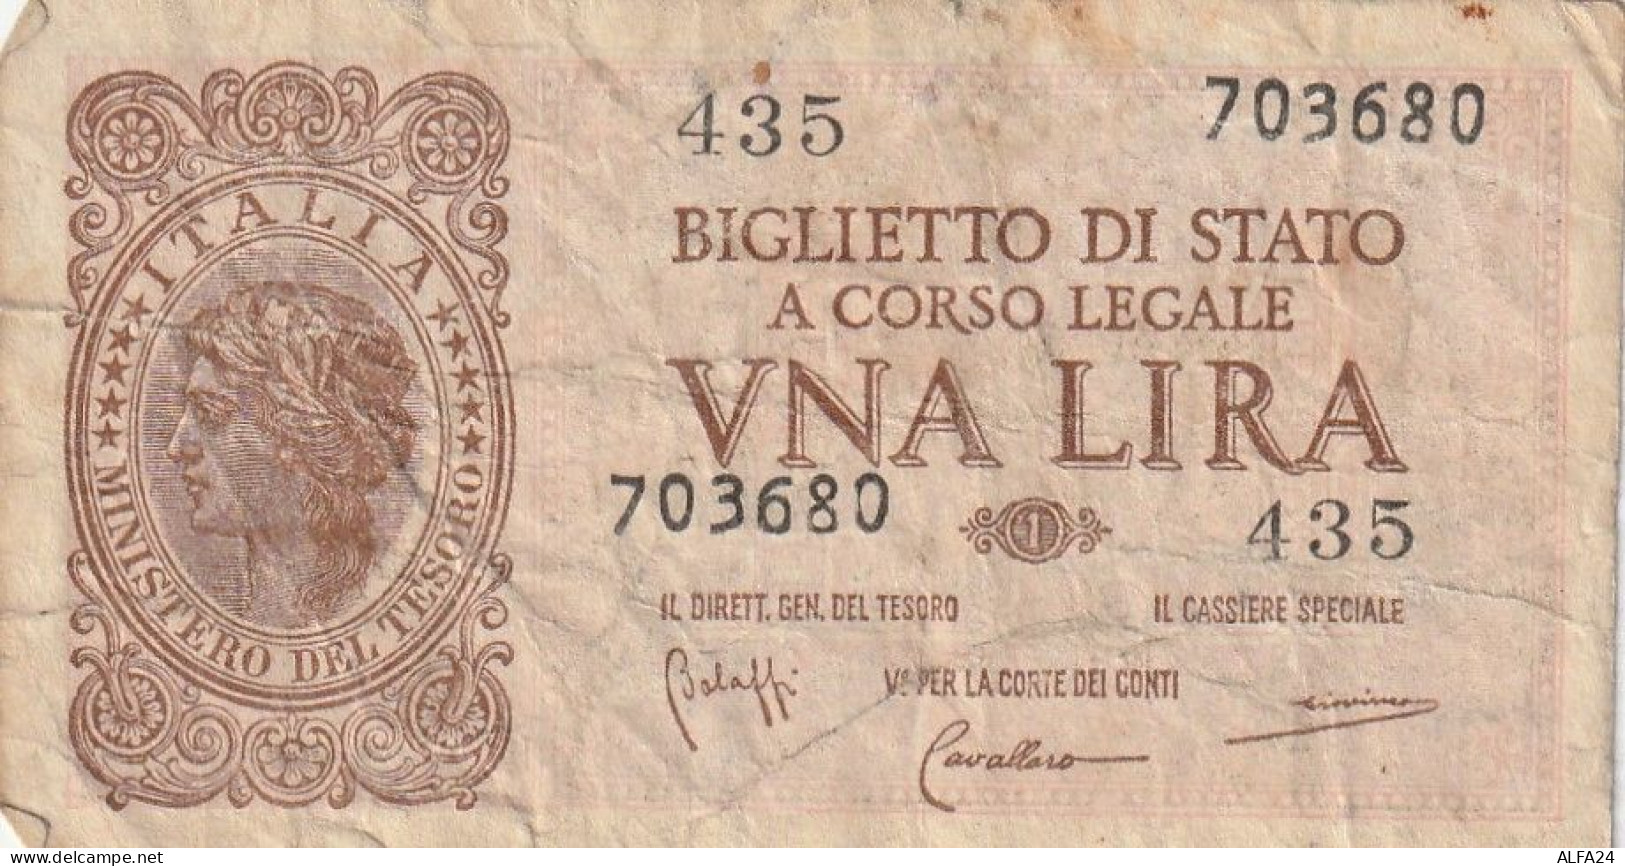 BANCONOTA BIGLIETTO DI STATO ITALIA 1 LIRA VF (RY7356 - Italië – 1 Lira